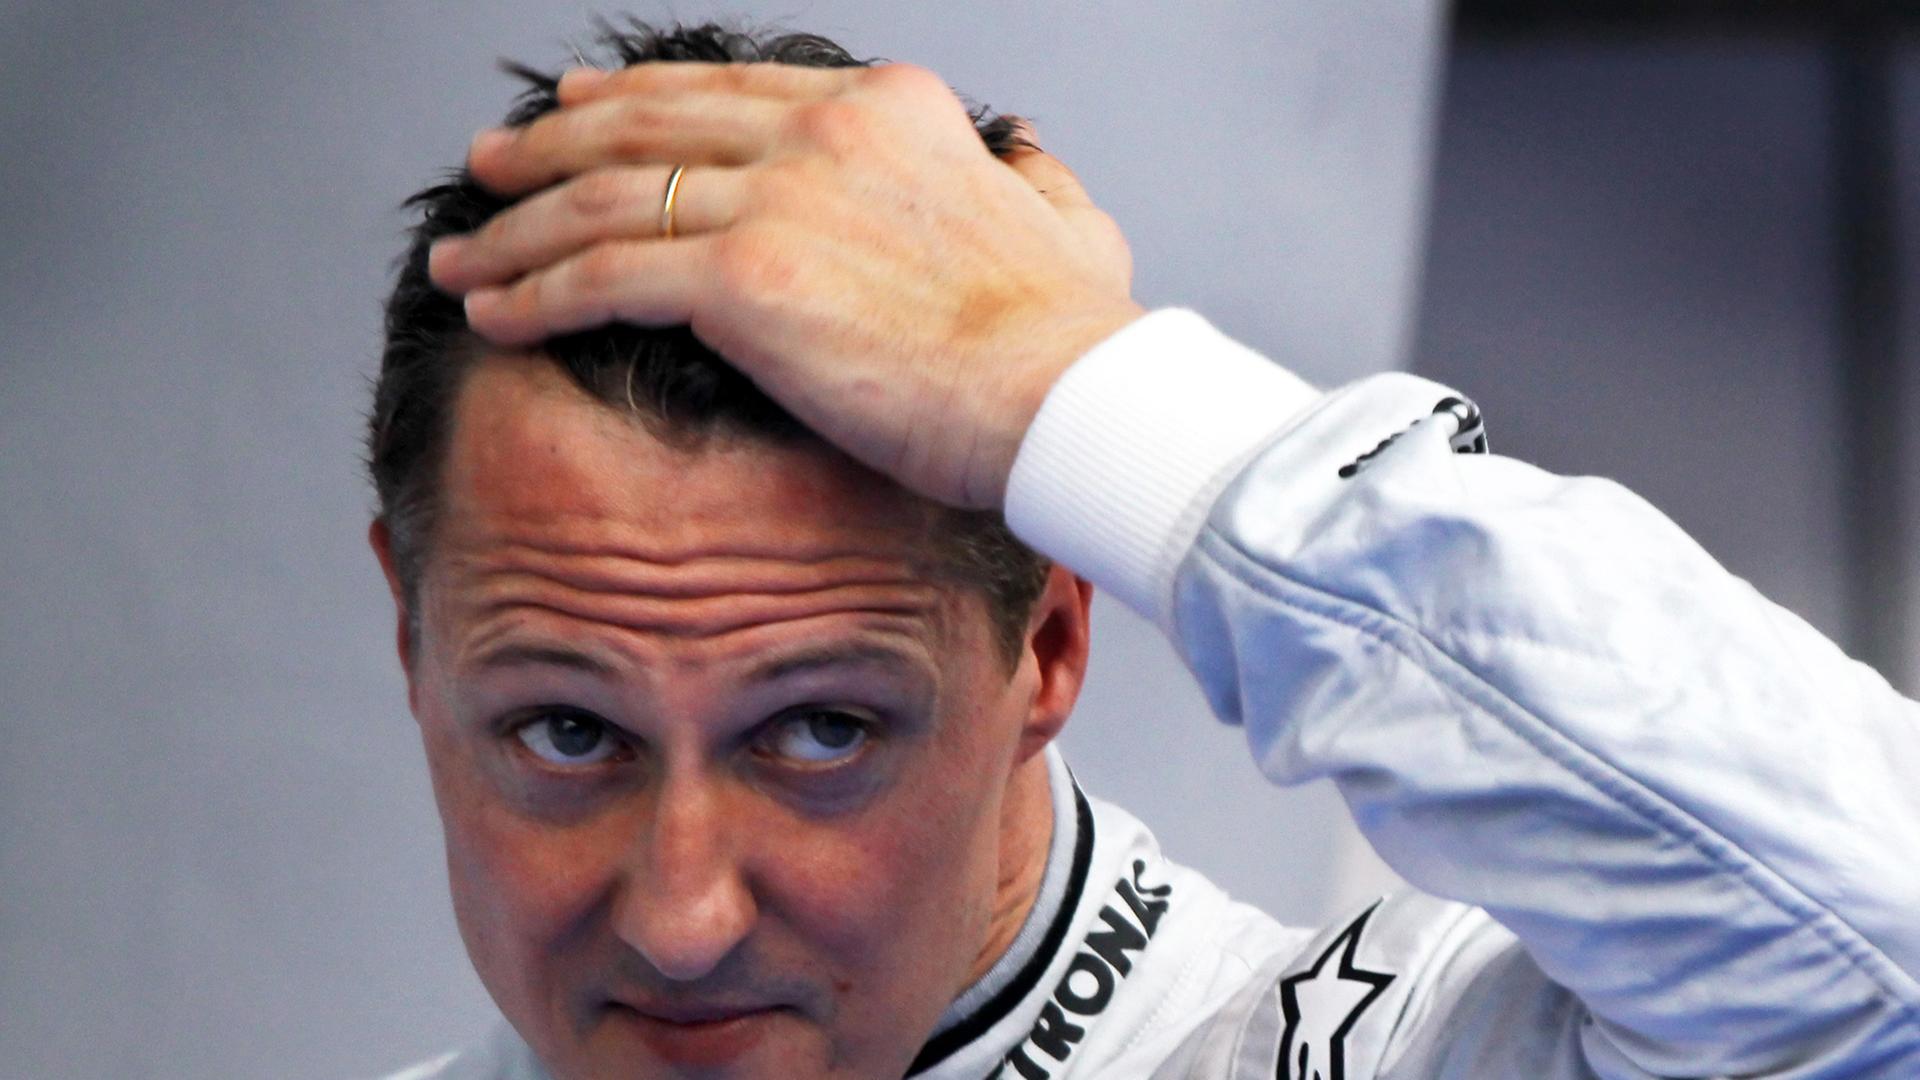 Michael Schumacher schaut skeptisch in eine Kamera eines Fotografen